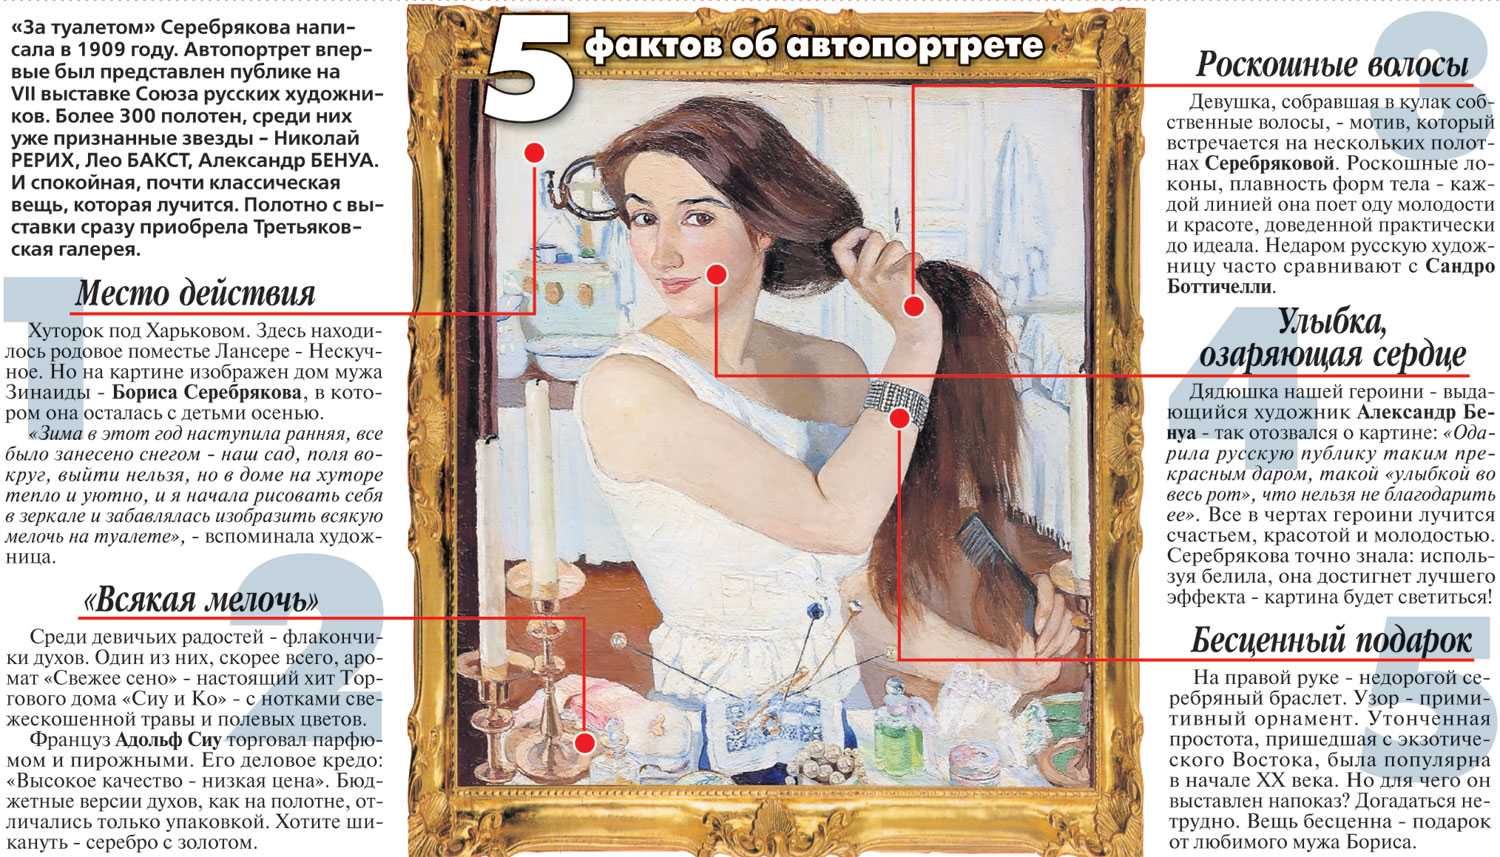 Сочинение-описание картины «за туалетом. автопортрет», серебрякова (2 варианта - кратко и подробно)